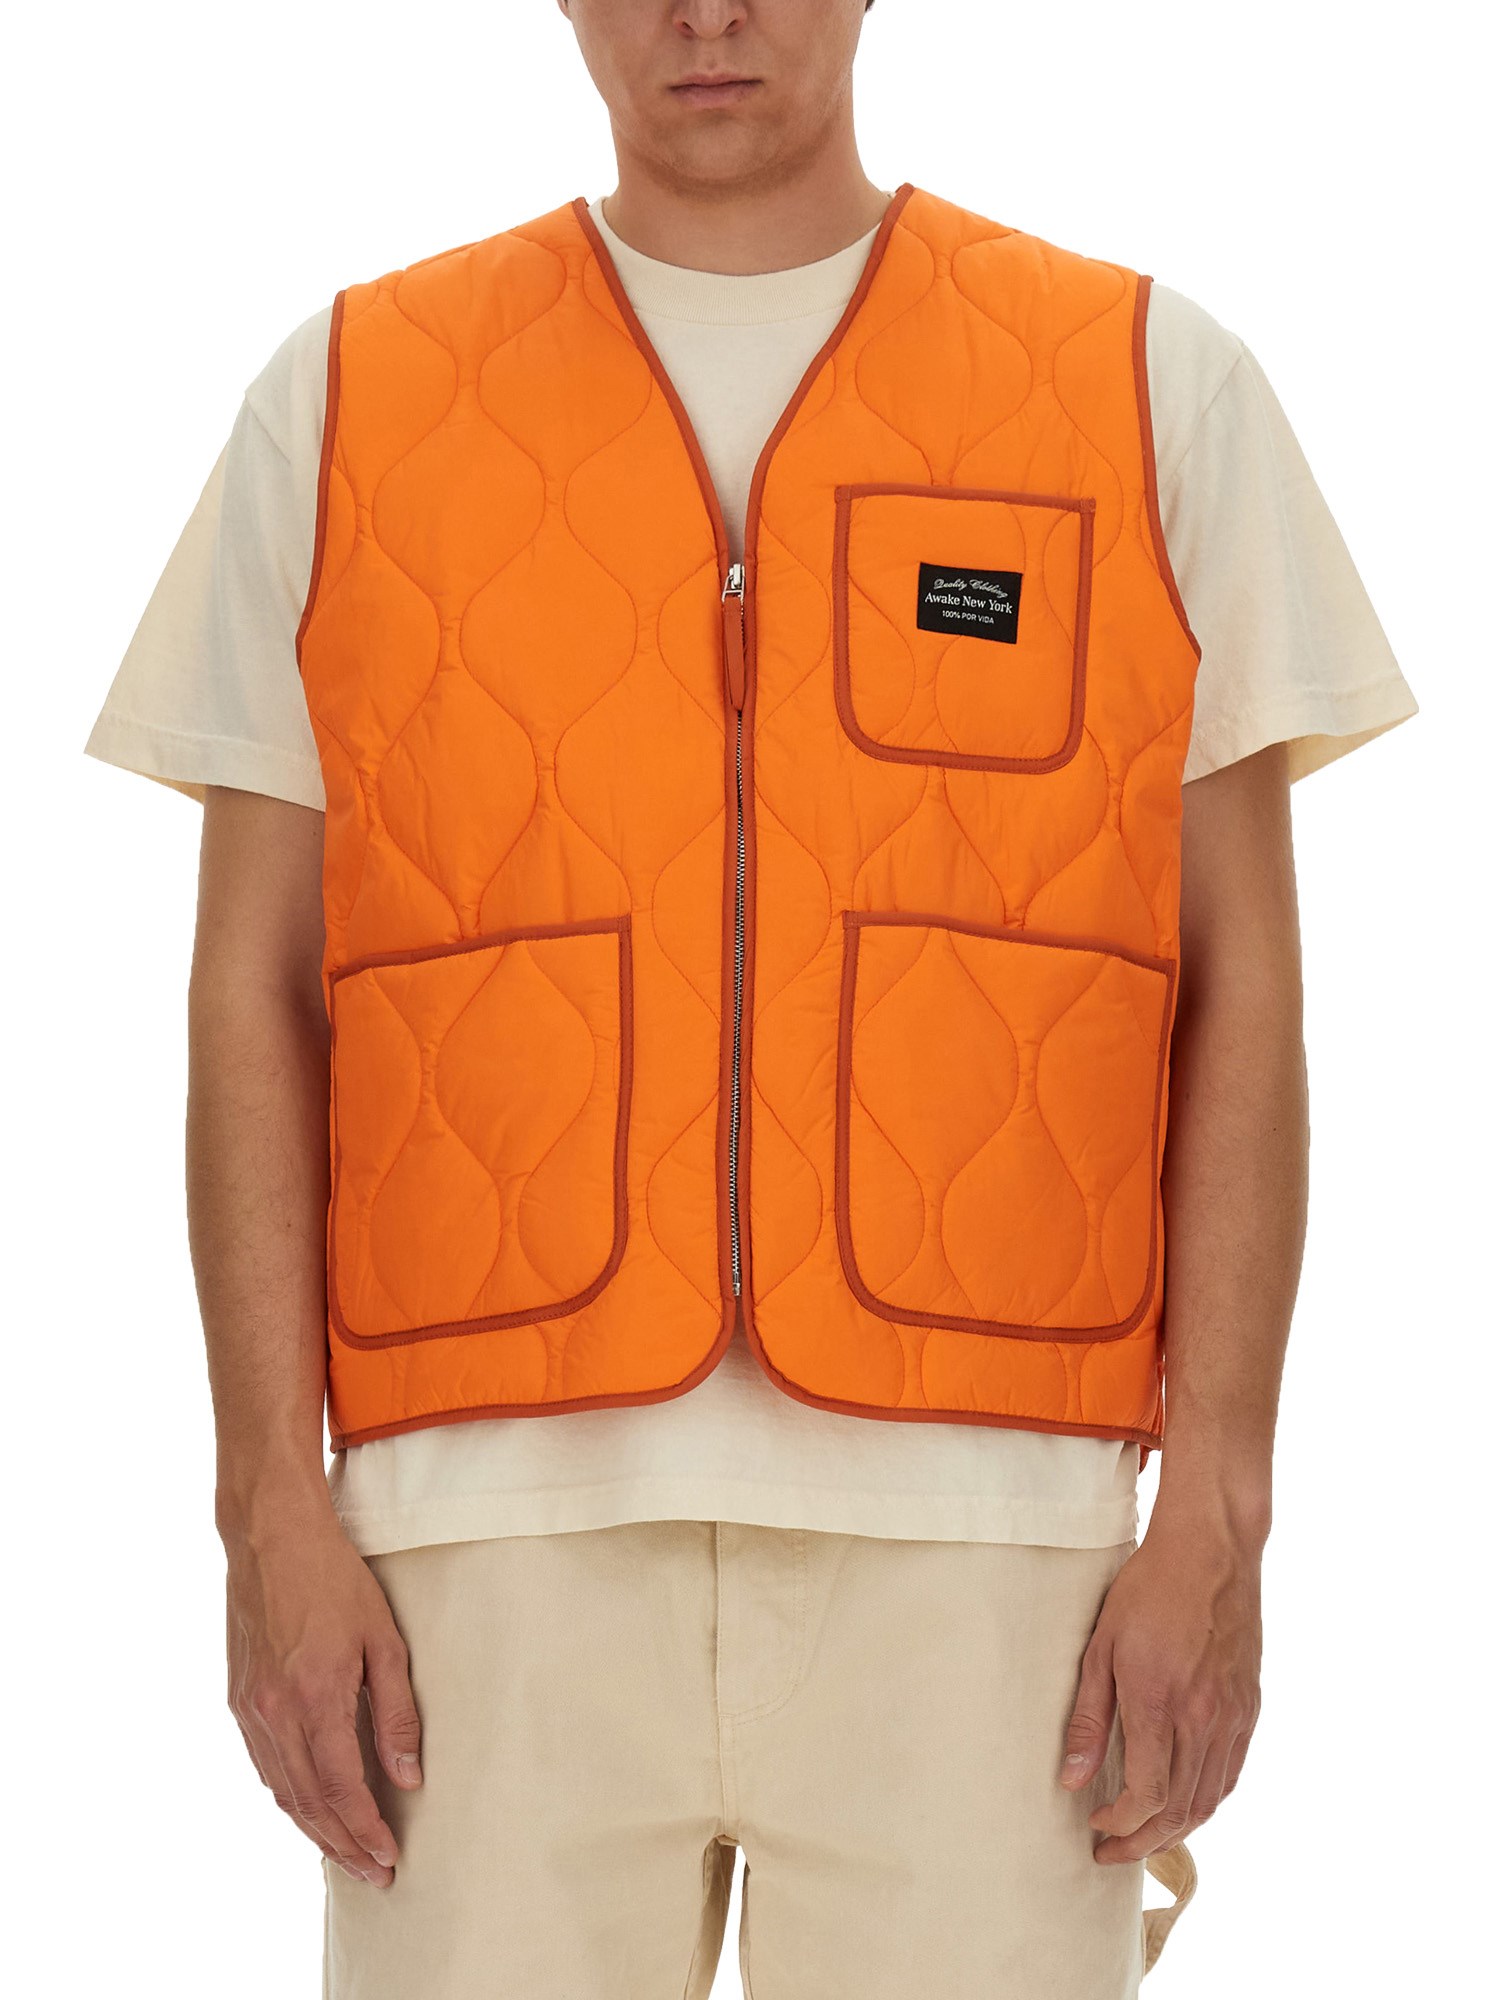 Awake Ny awake ny vests with logo